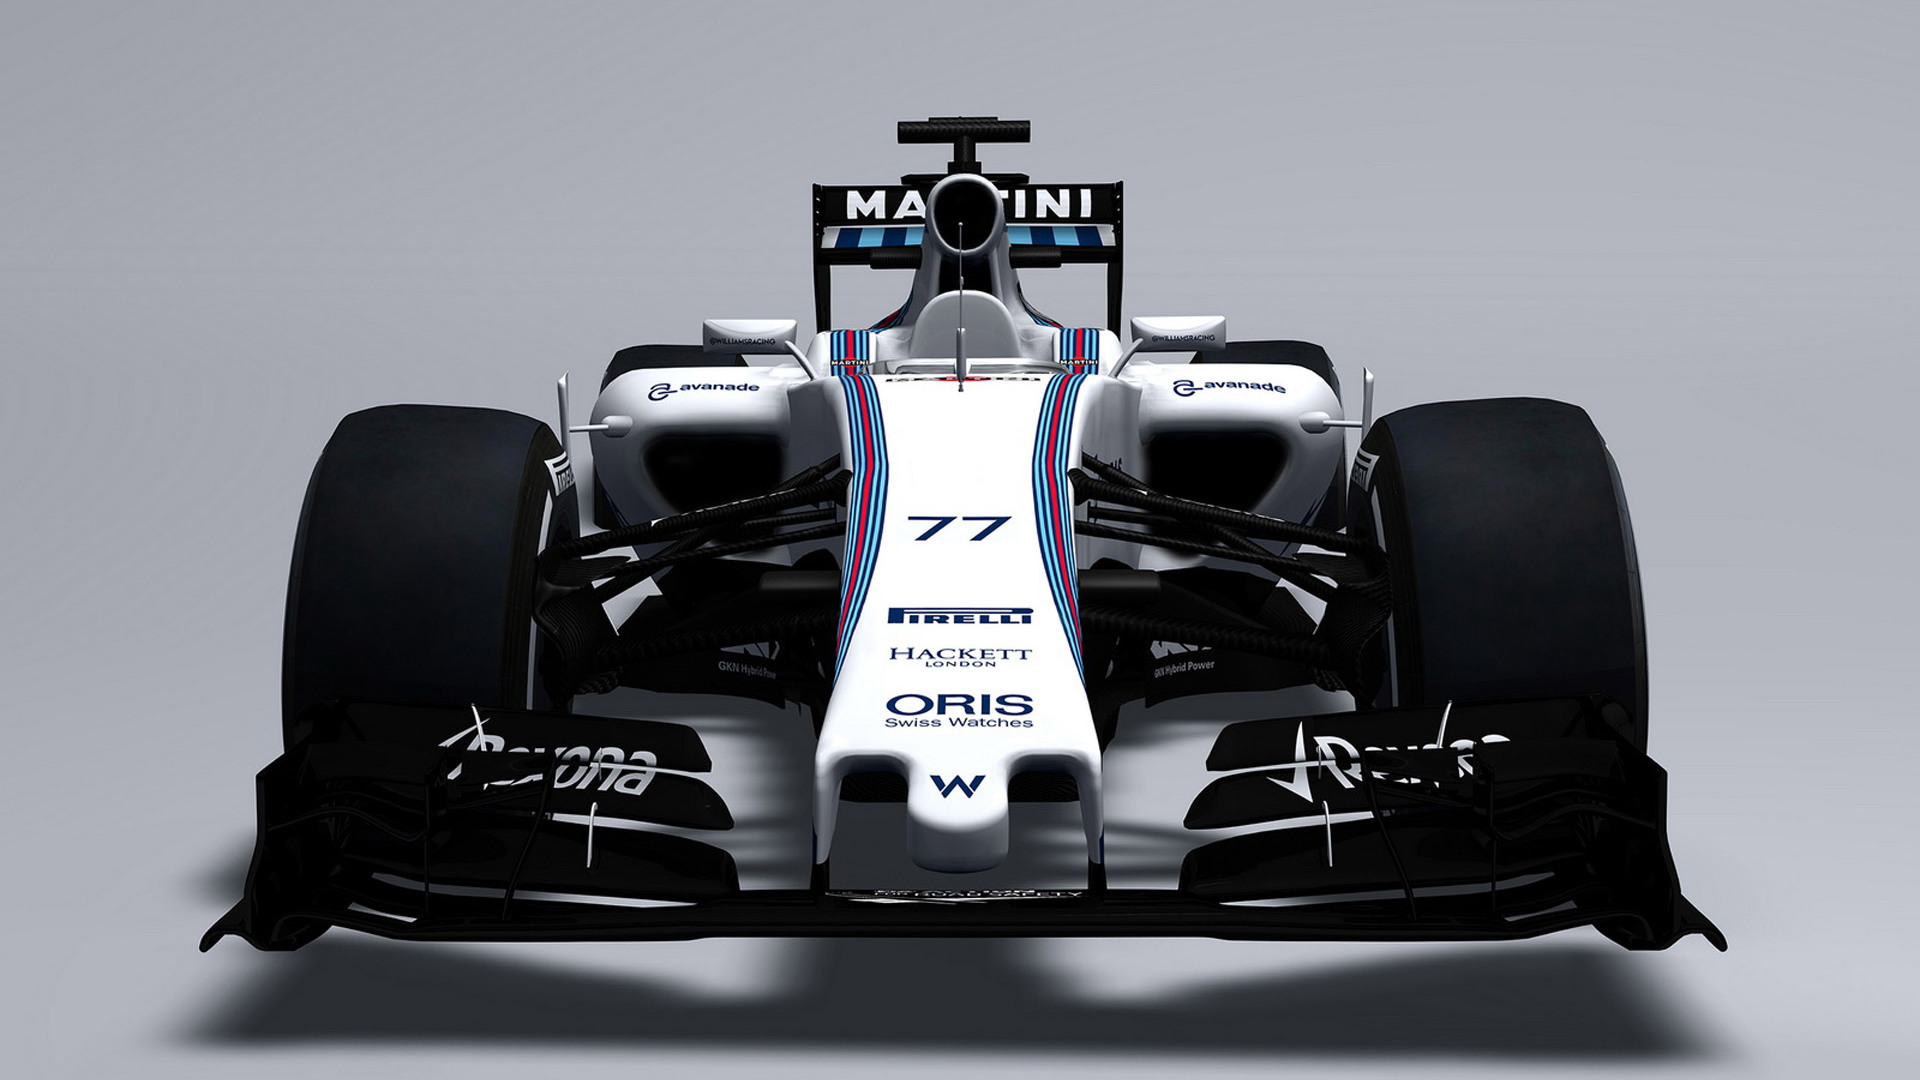 Williams FW37 2015 Formula One car